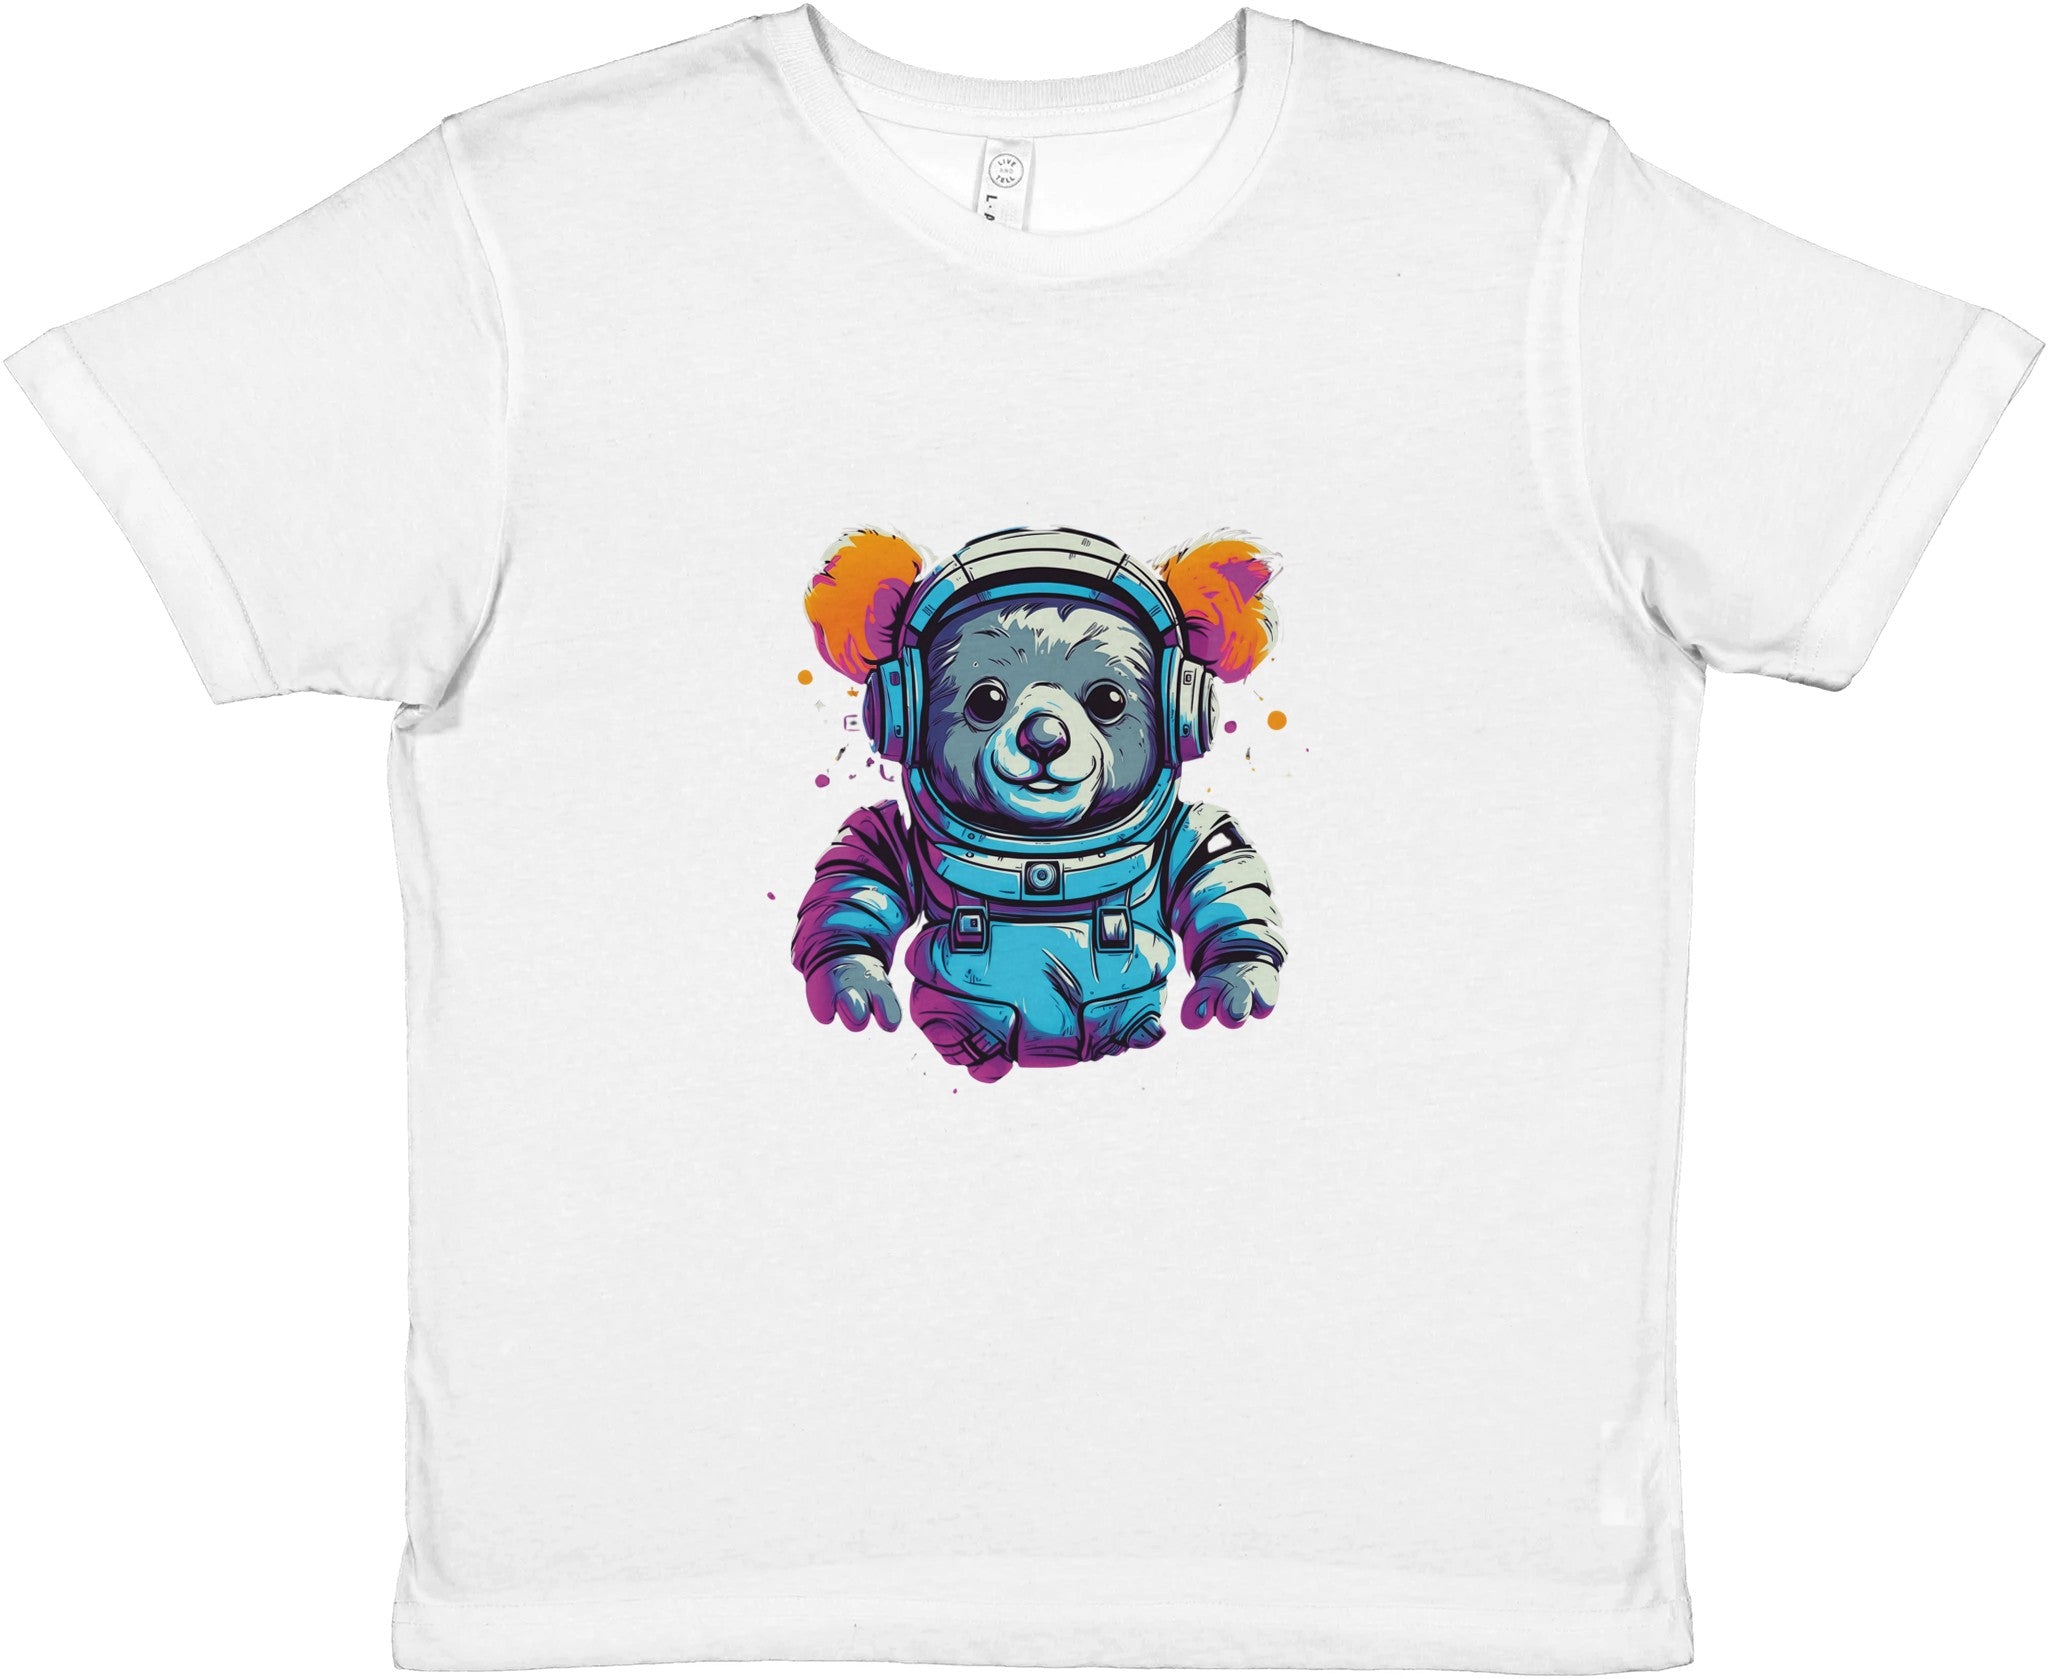 Cosmic Explorer Koala Kids Crewneck T-shirt - Optimalprint